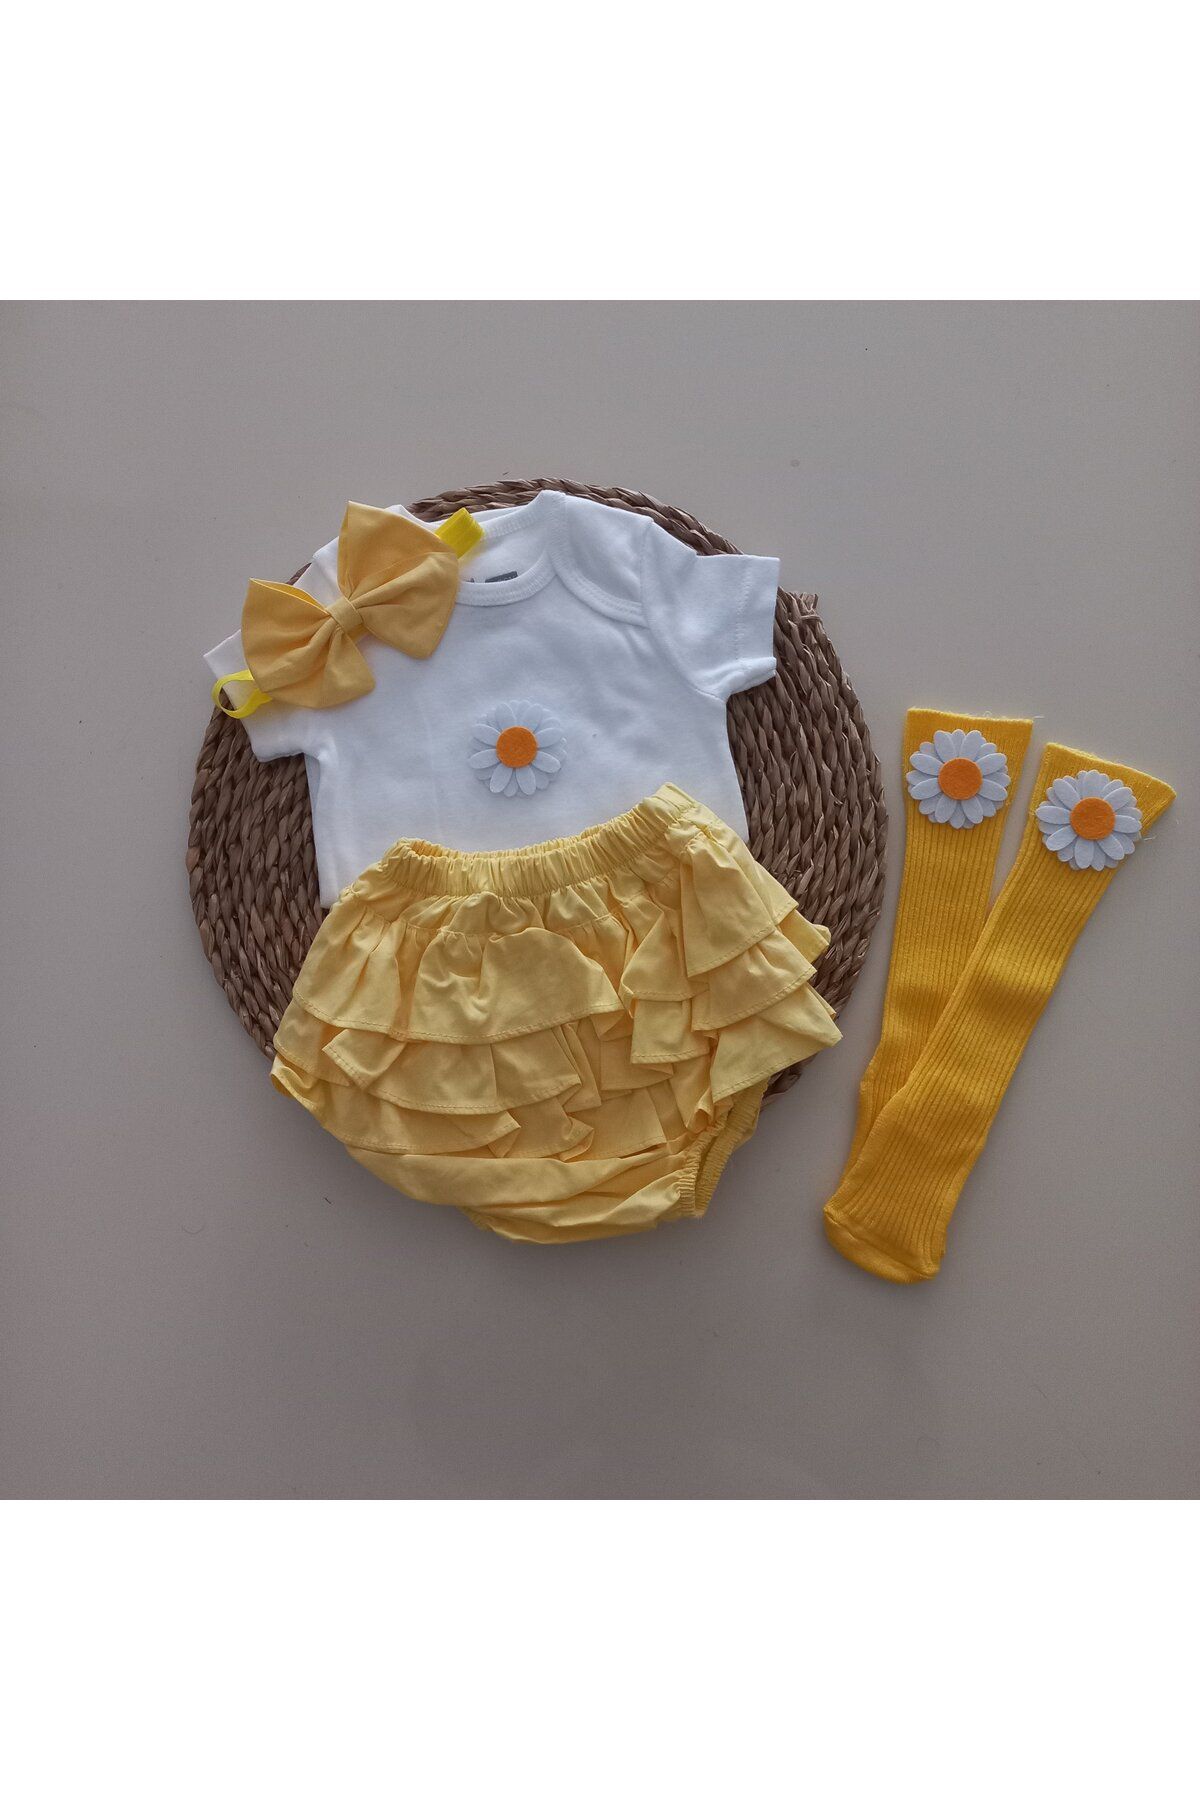 MARS BABY Kız Bebek Sarı Çiçek Fırfır Şort Etek Bodyli Çorap Takımı